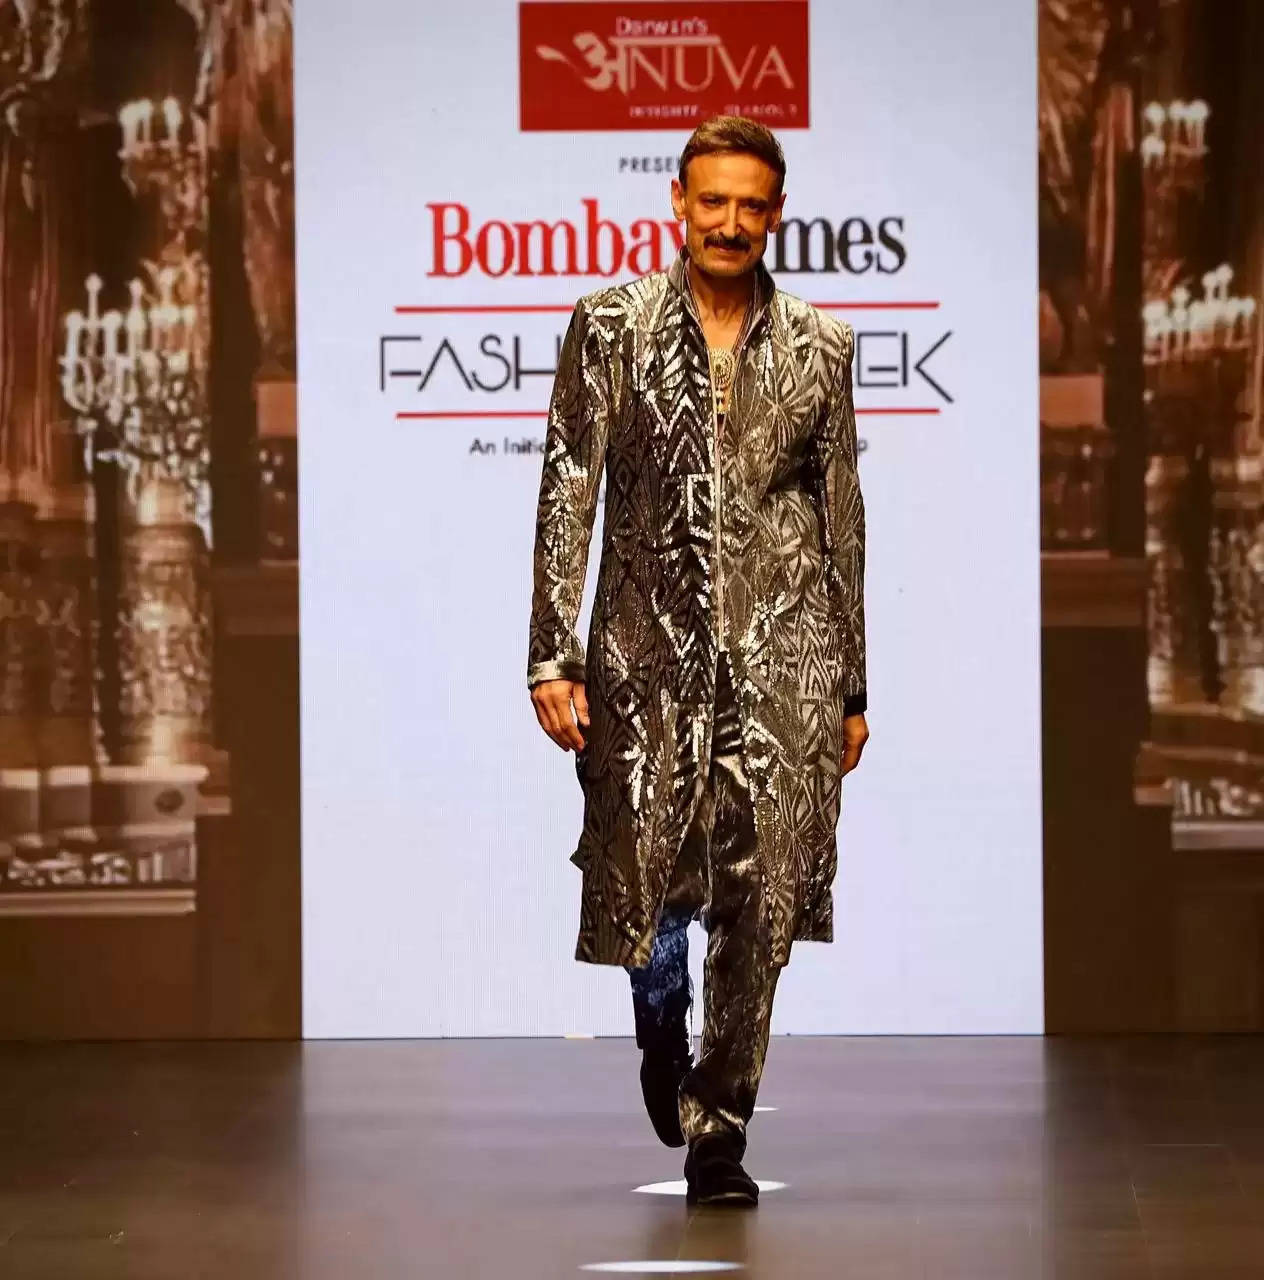 राहुल देव ने एक बार फिर साबित कर दिया कि वह परम सुपर मॉडल हैं। बॉम्बे टाइम्स फैशन वीक में रैंप पर चलते हुए वह बेहद आकर्षक और हैंडसम लग रहे थे